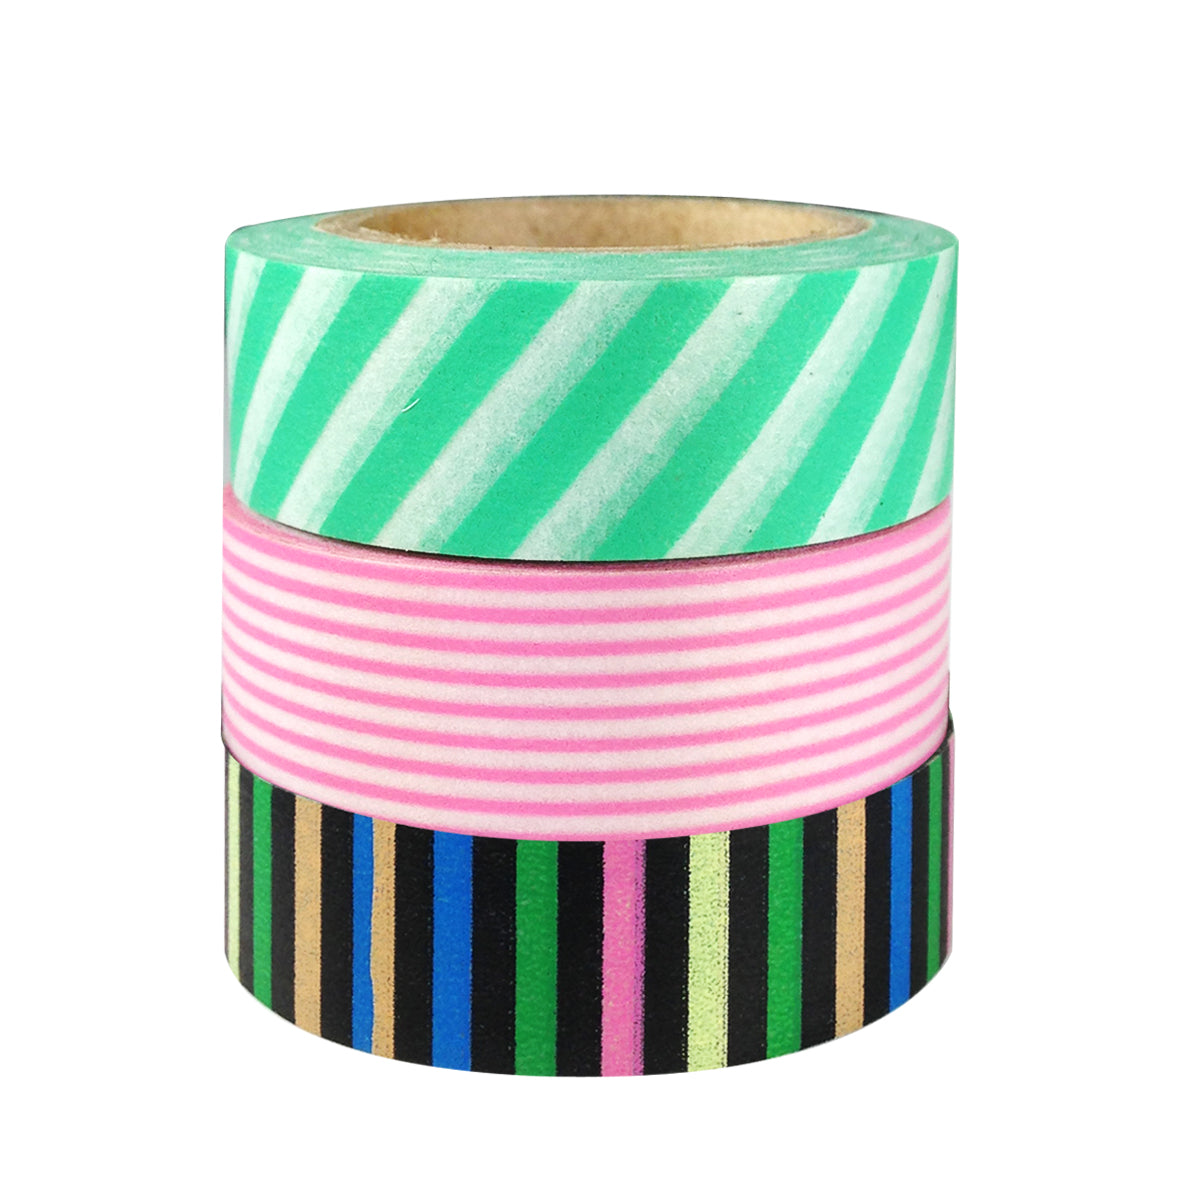 Straight Line Stripes Japanese Washi Masking Tape (Set of 3)